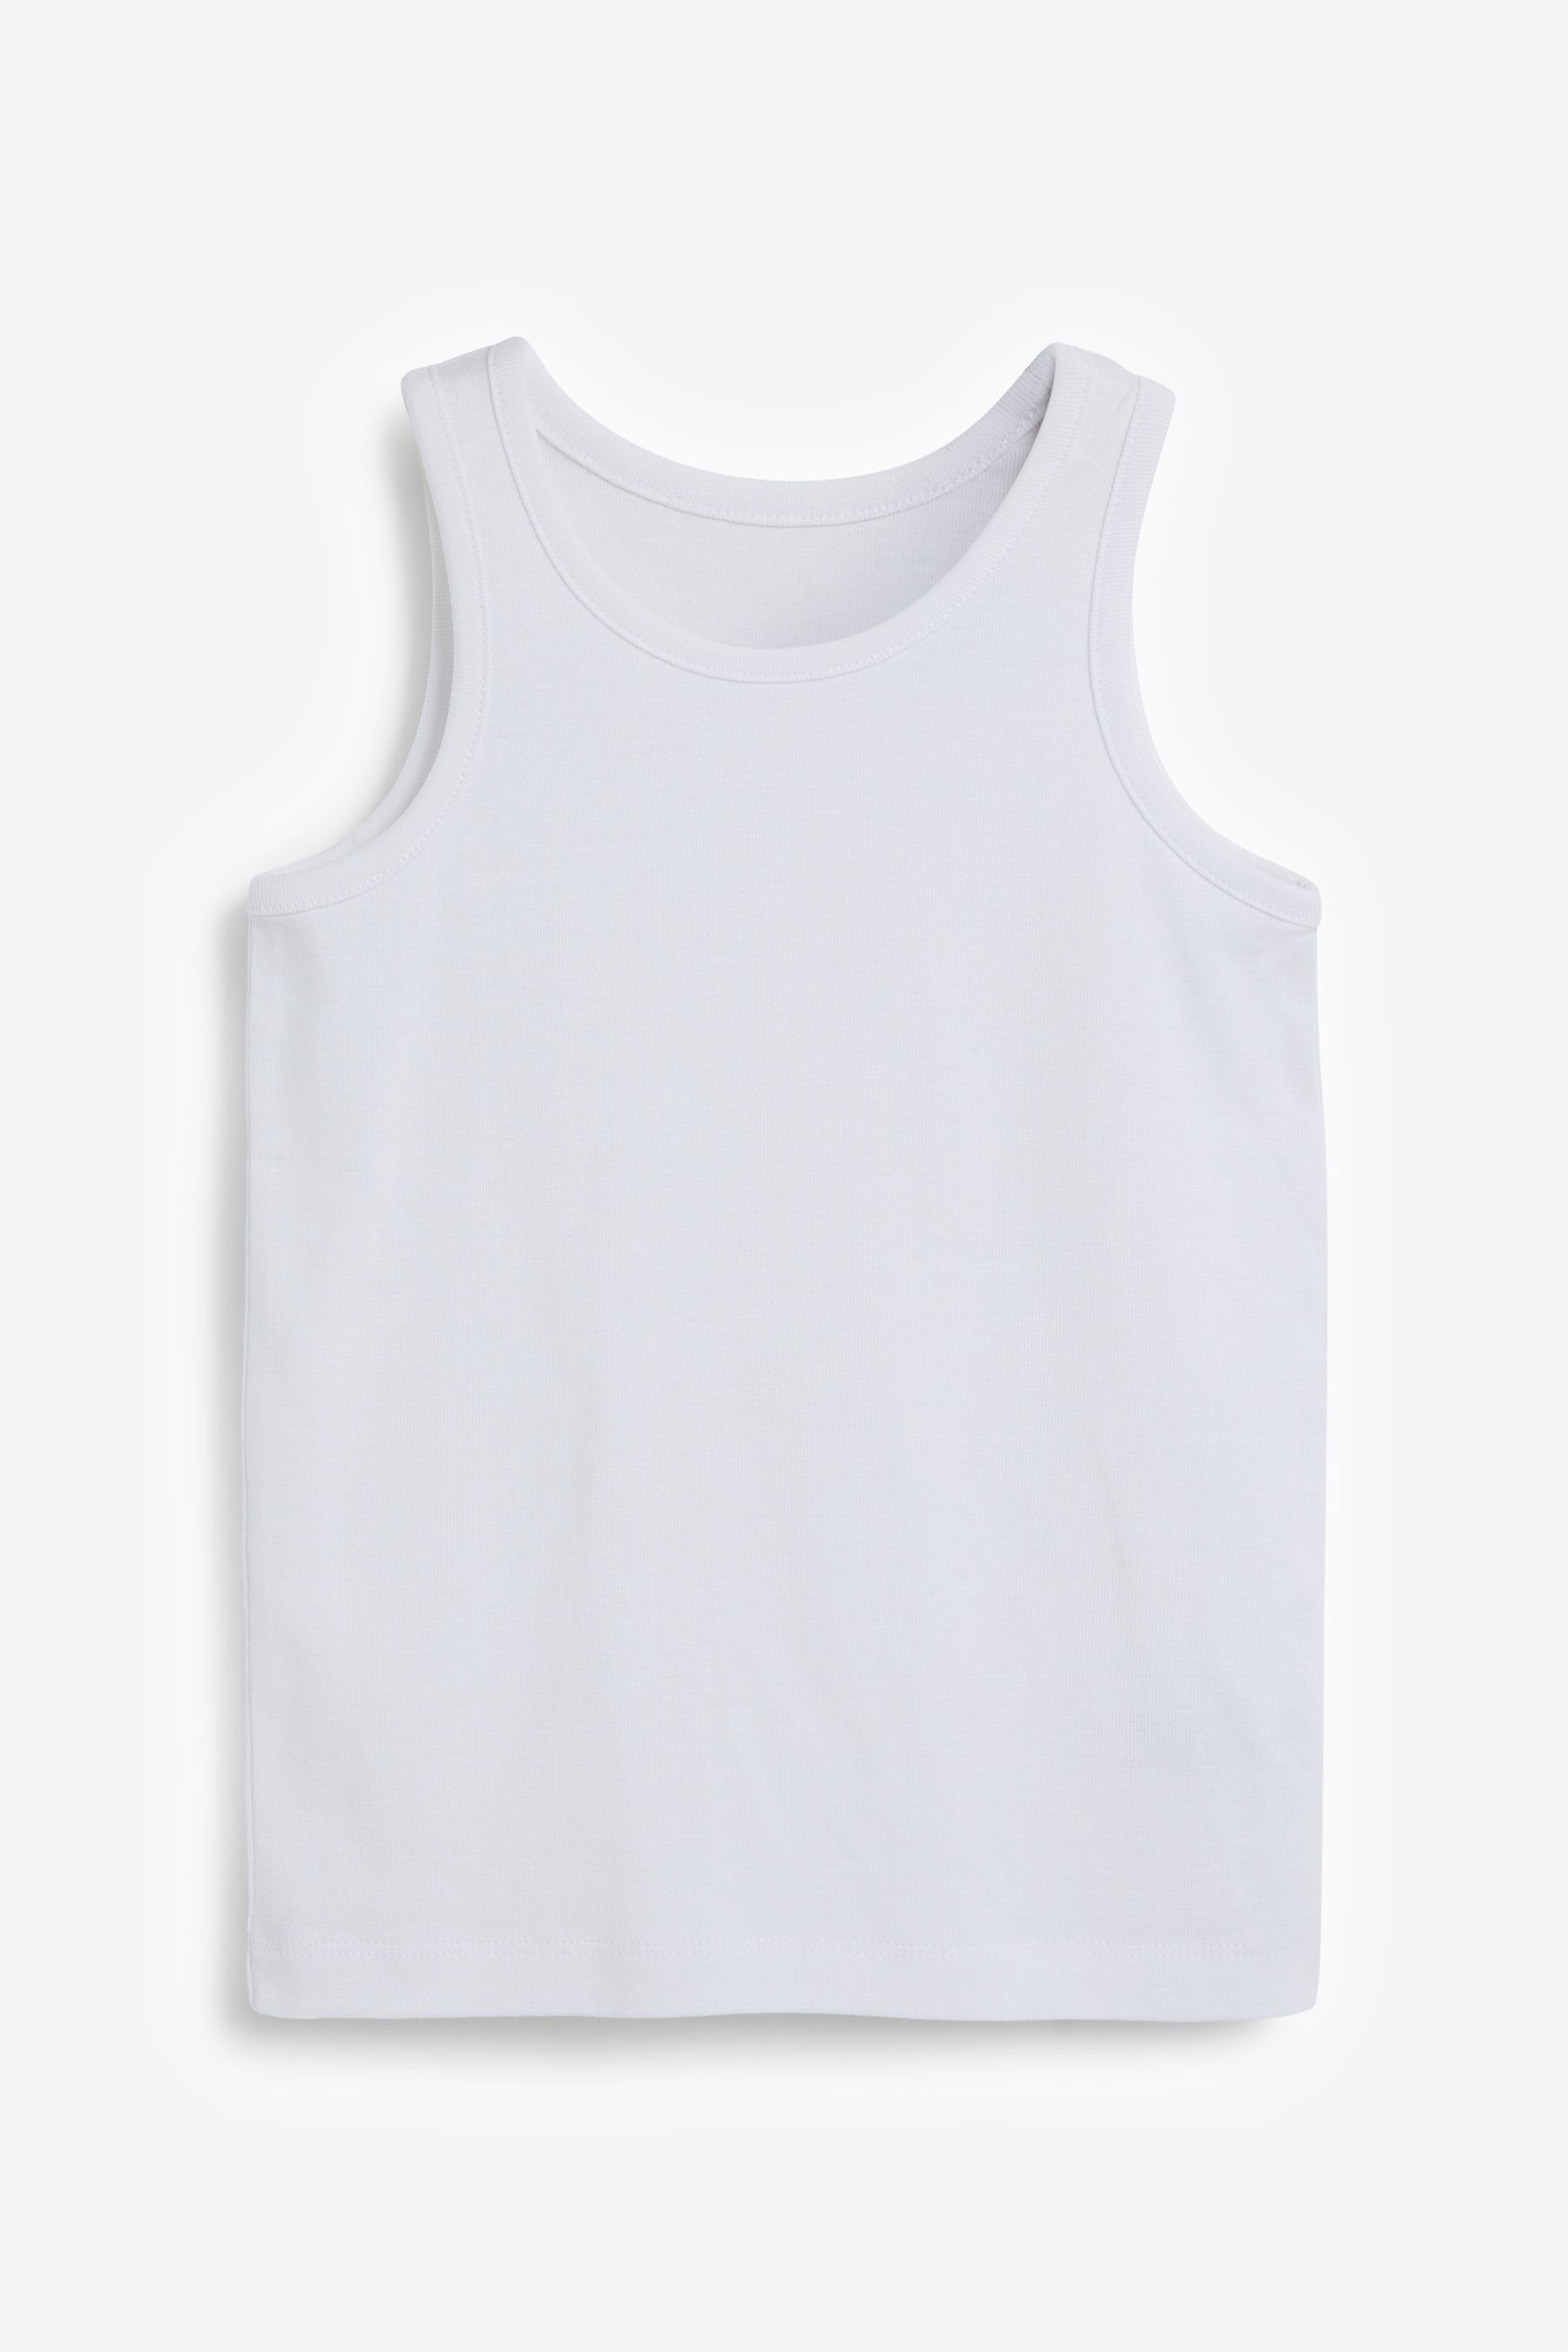 Unterhemd Grey/White (5-St) Next Unterhemden aus, 5er-Pack